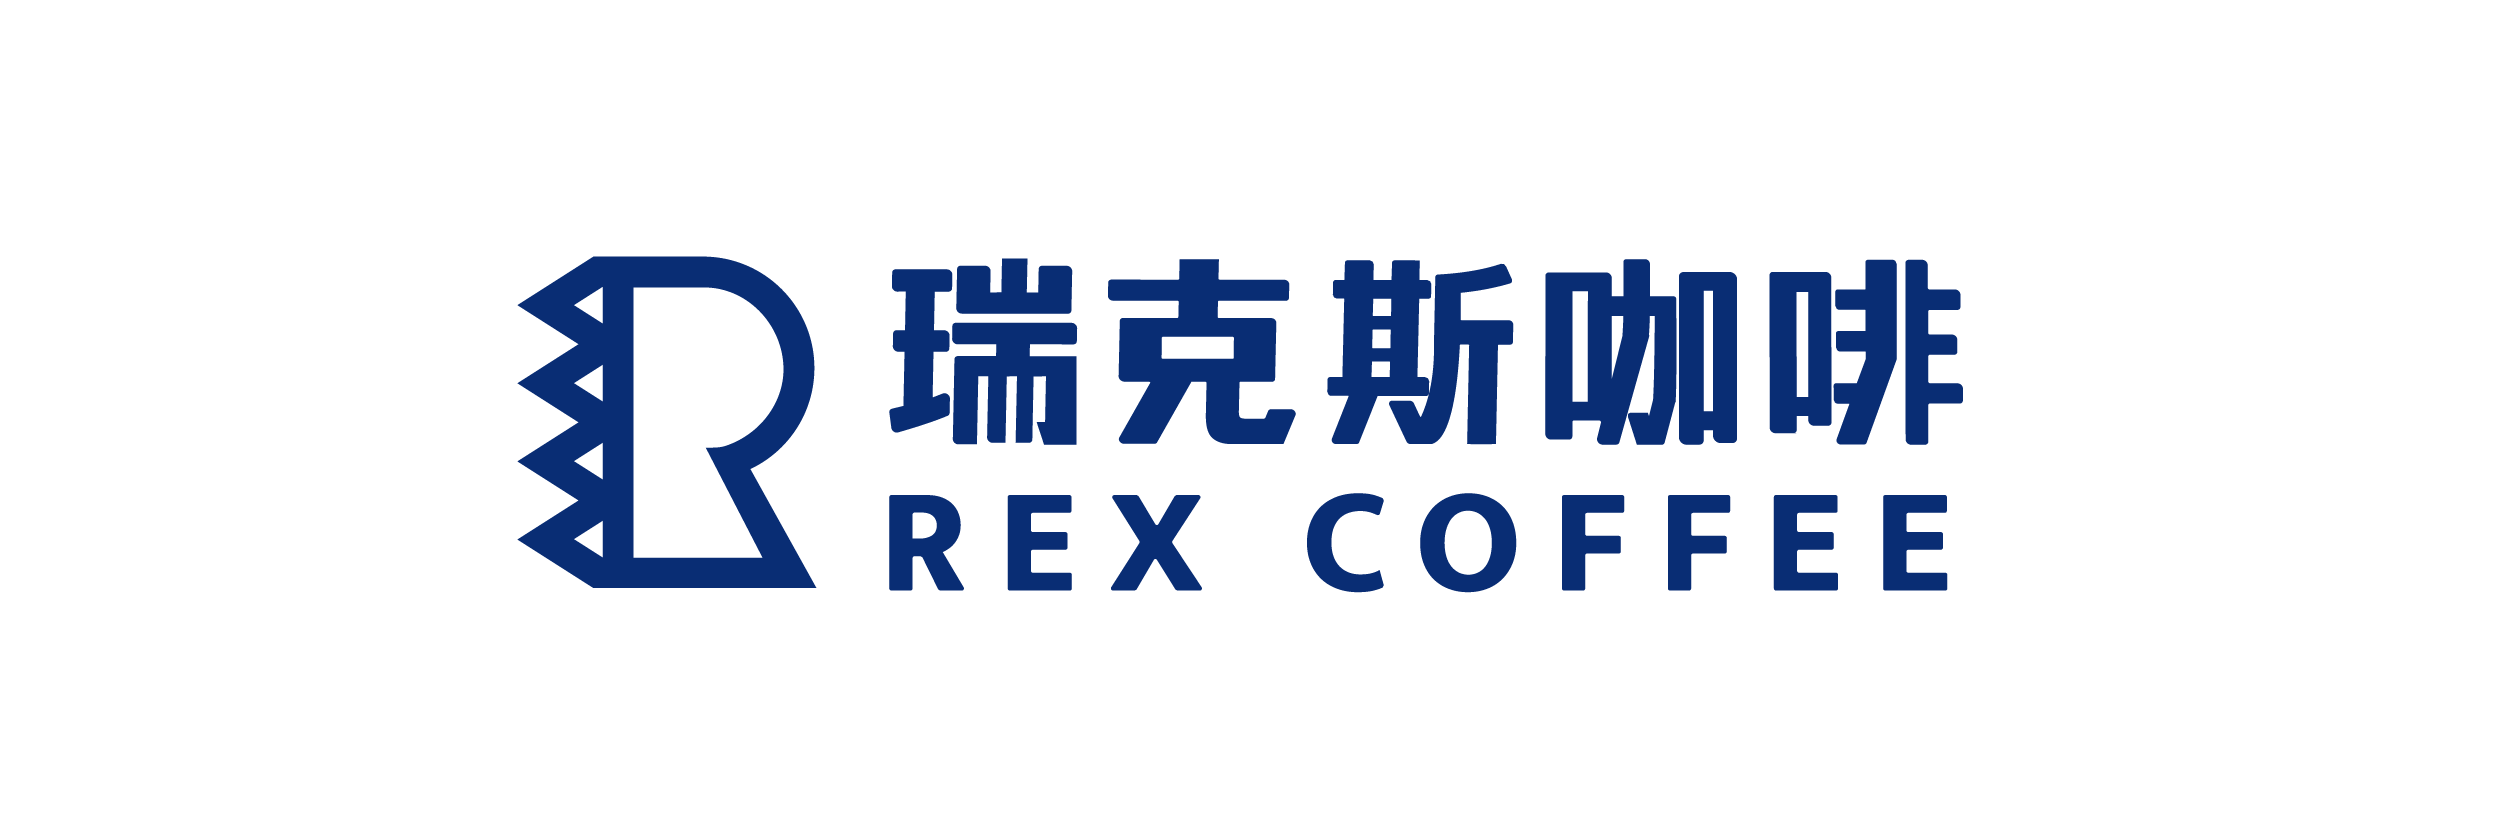 Rex Coffee 瑞克斯咖啡